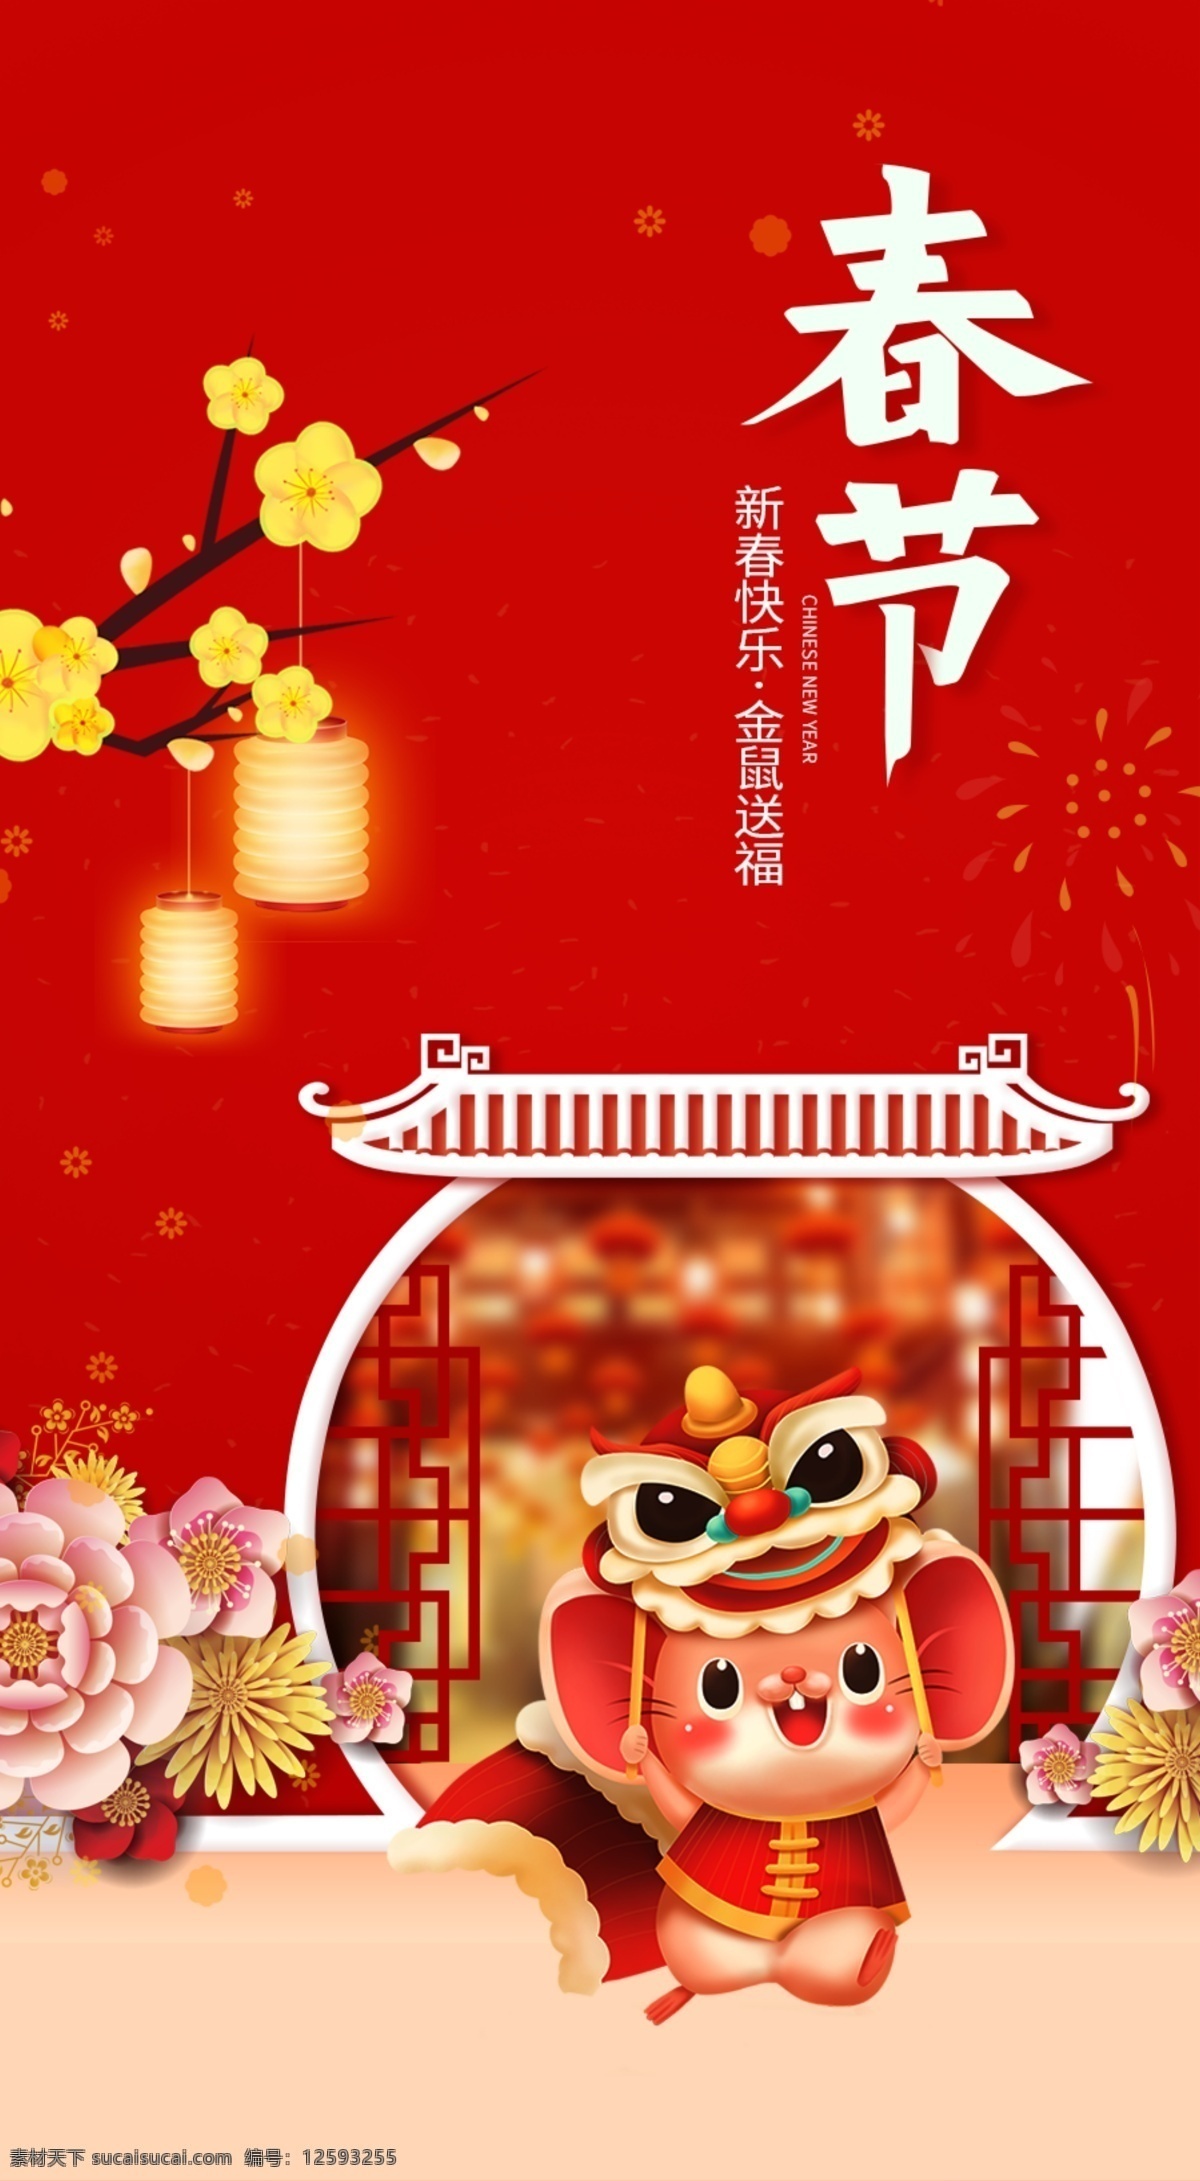 春节海报图片 春节 喜庆 闹狮子 腊梅 过年 广告物料 文化艺术 节日庆祝